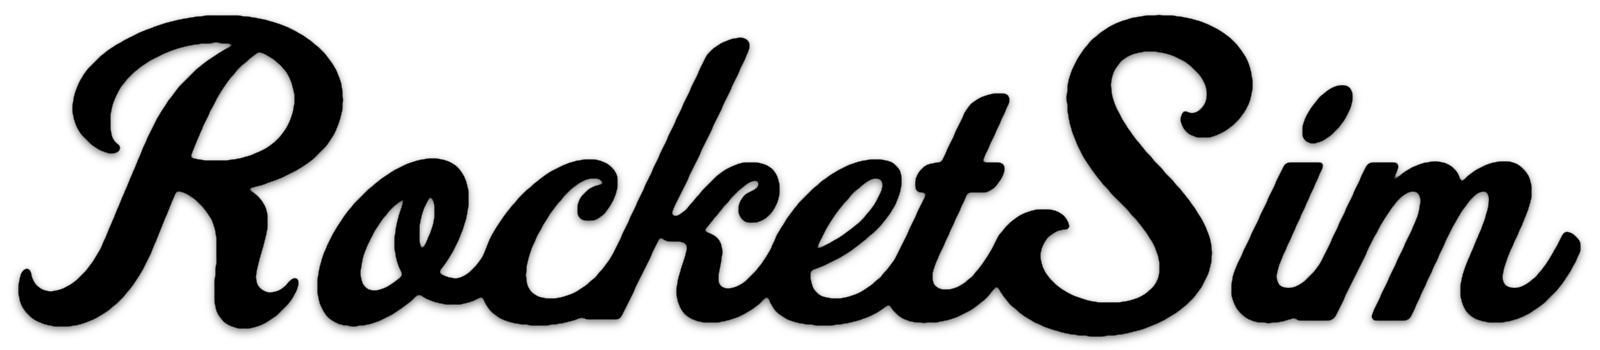 RocketSim logo